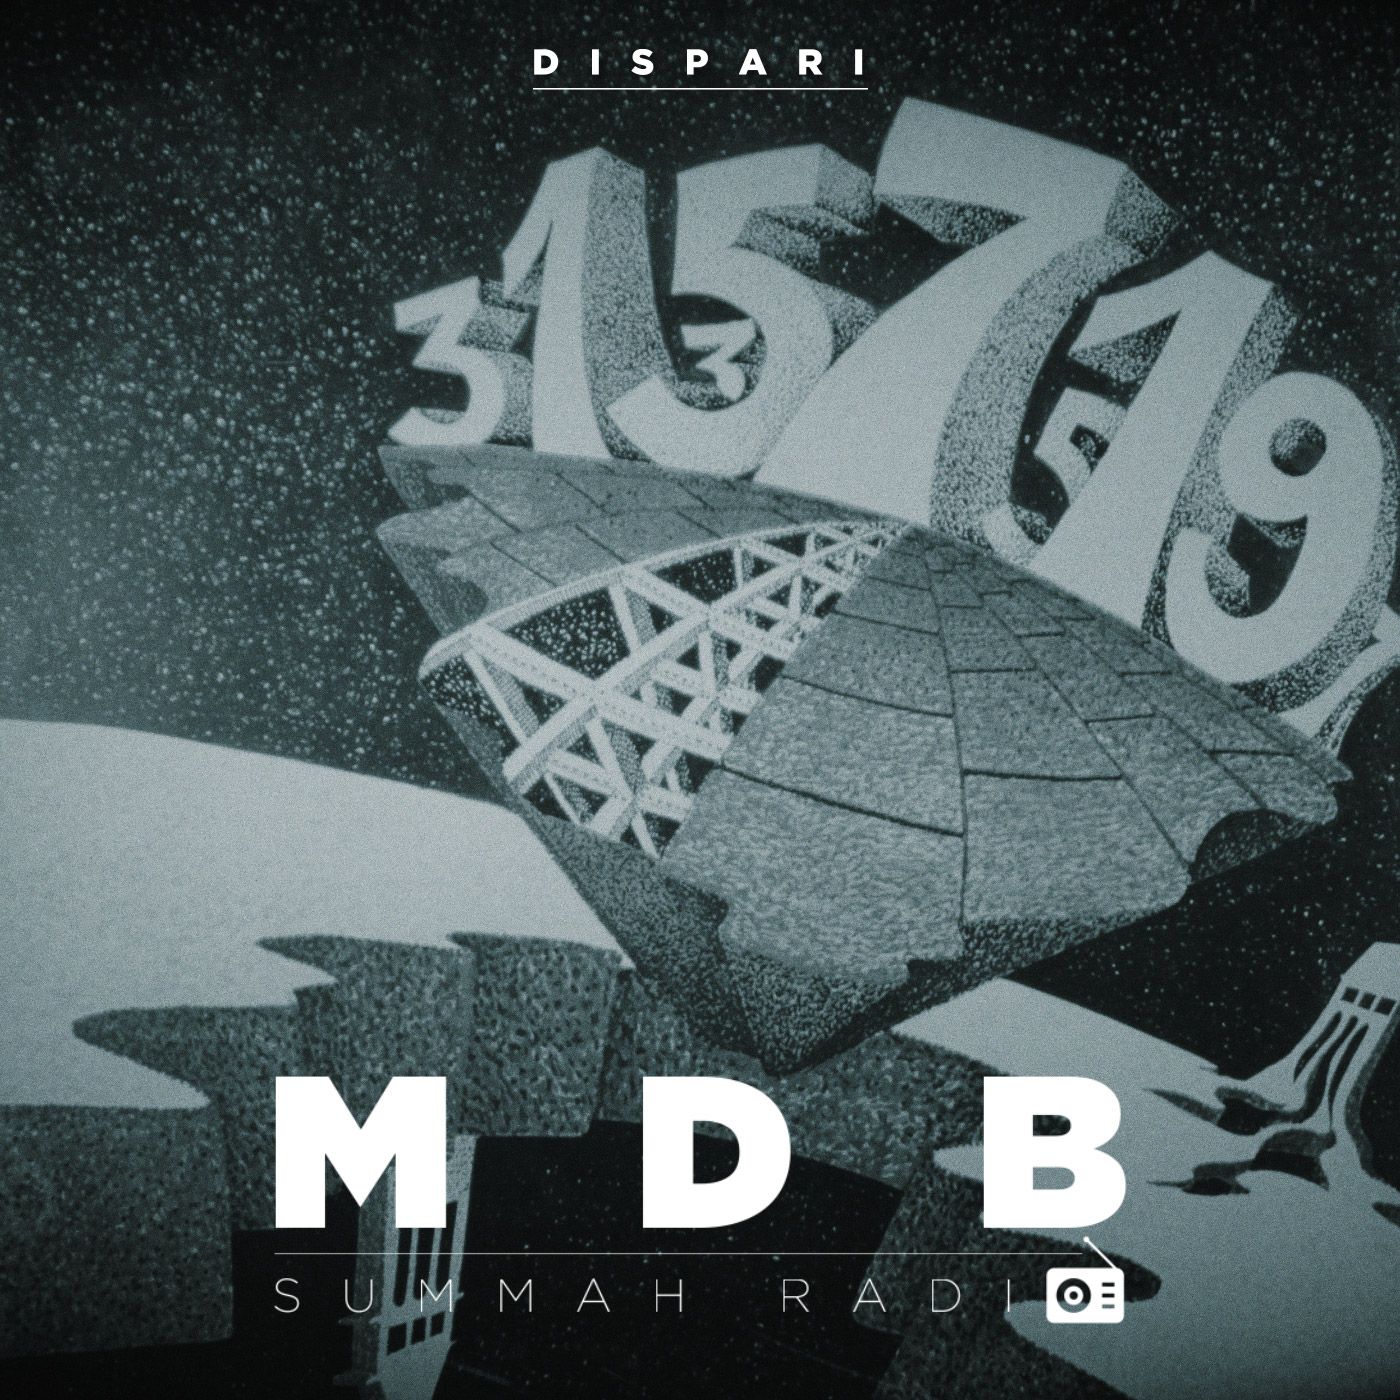 MDB Summah Radio ep. 4 "Dispari"